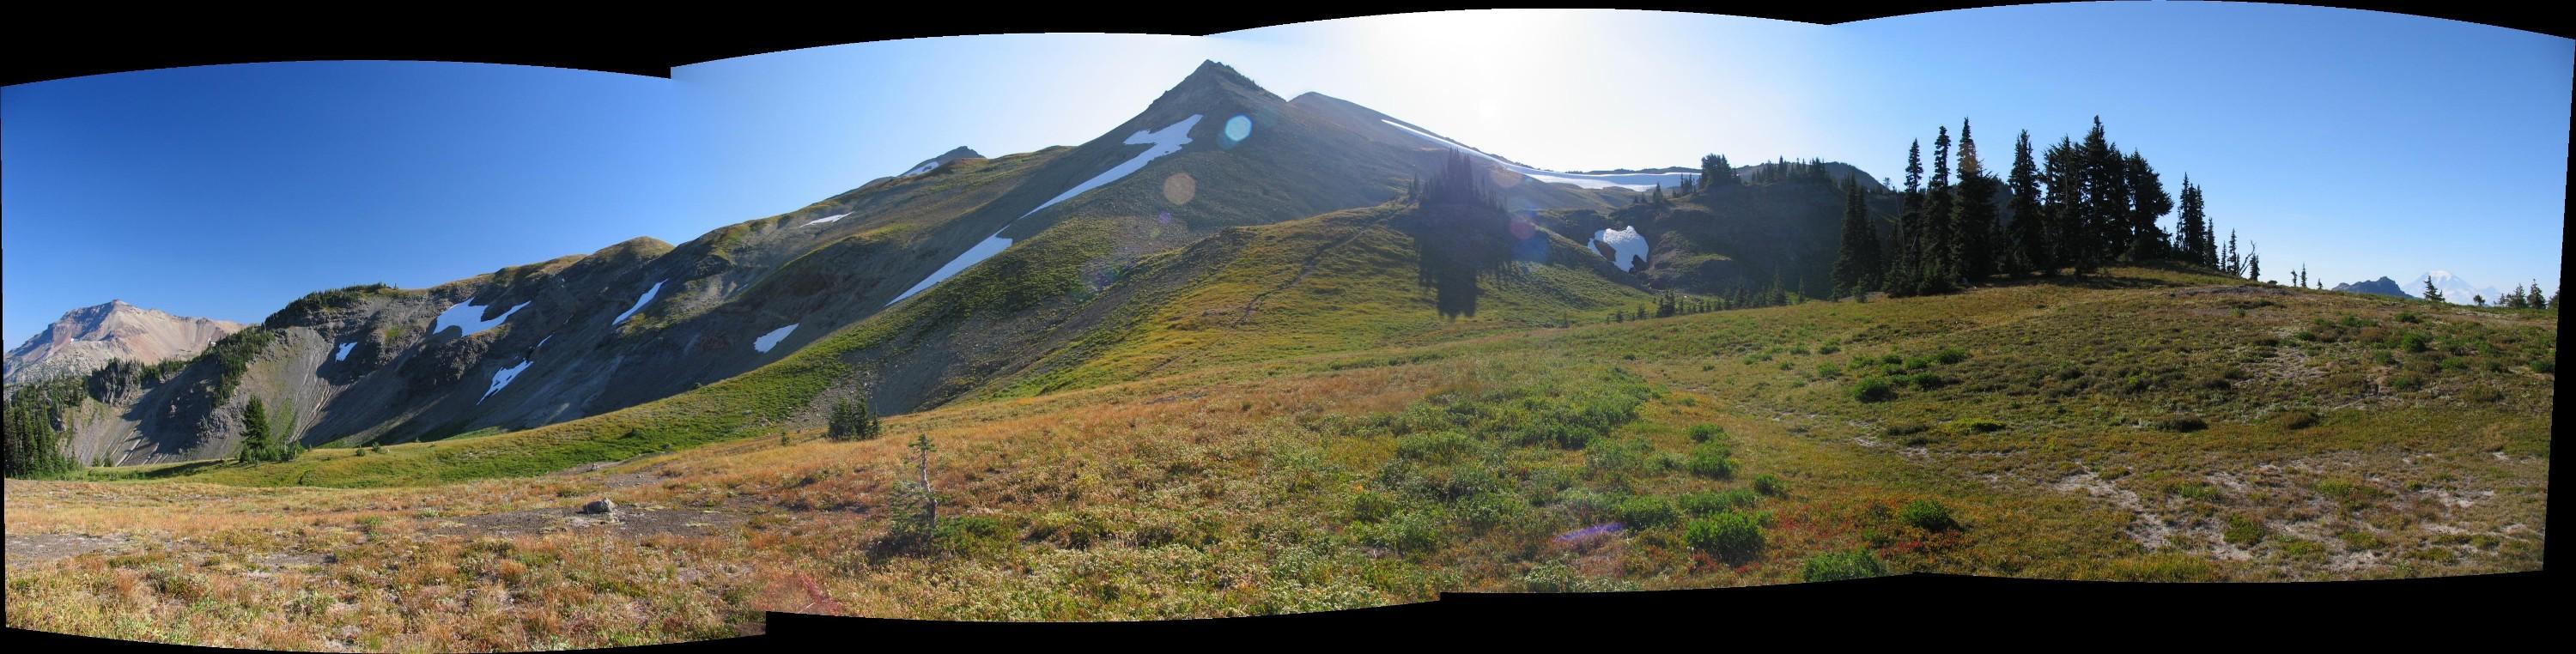 Peak 6768 campsite panorama